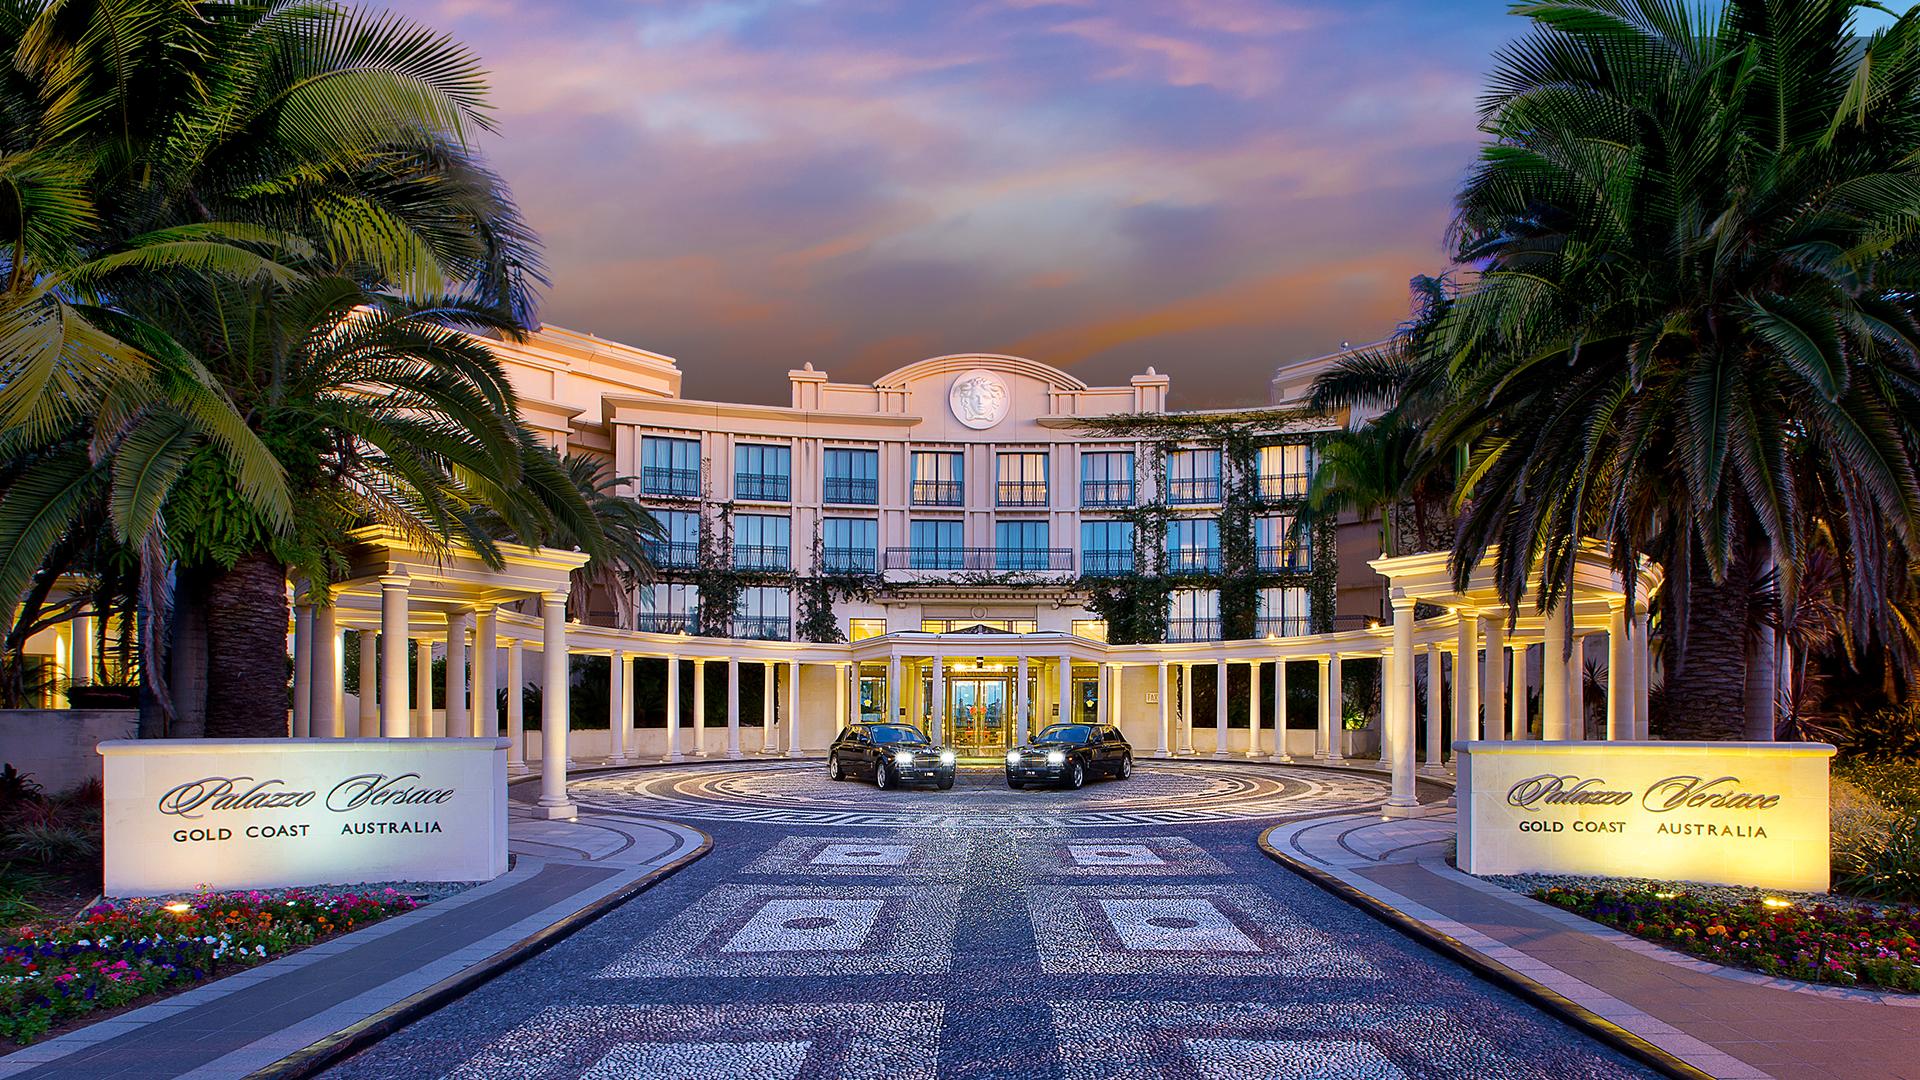 Palazzo Versace Hotel In Gold Coast Queensland Australia Welcome